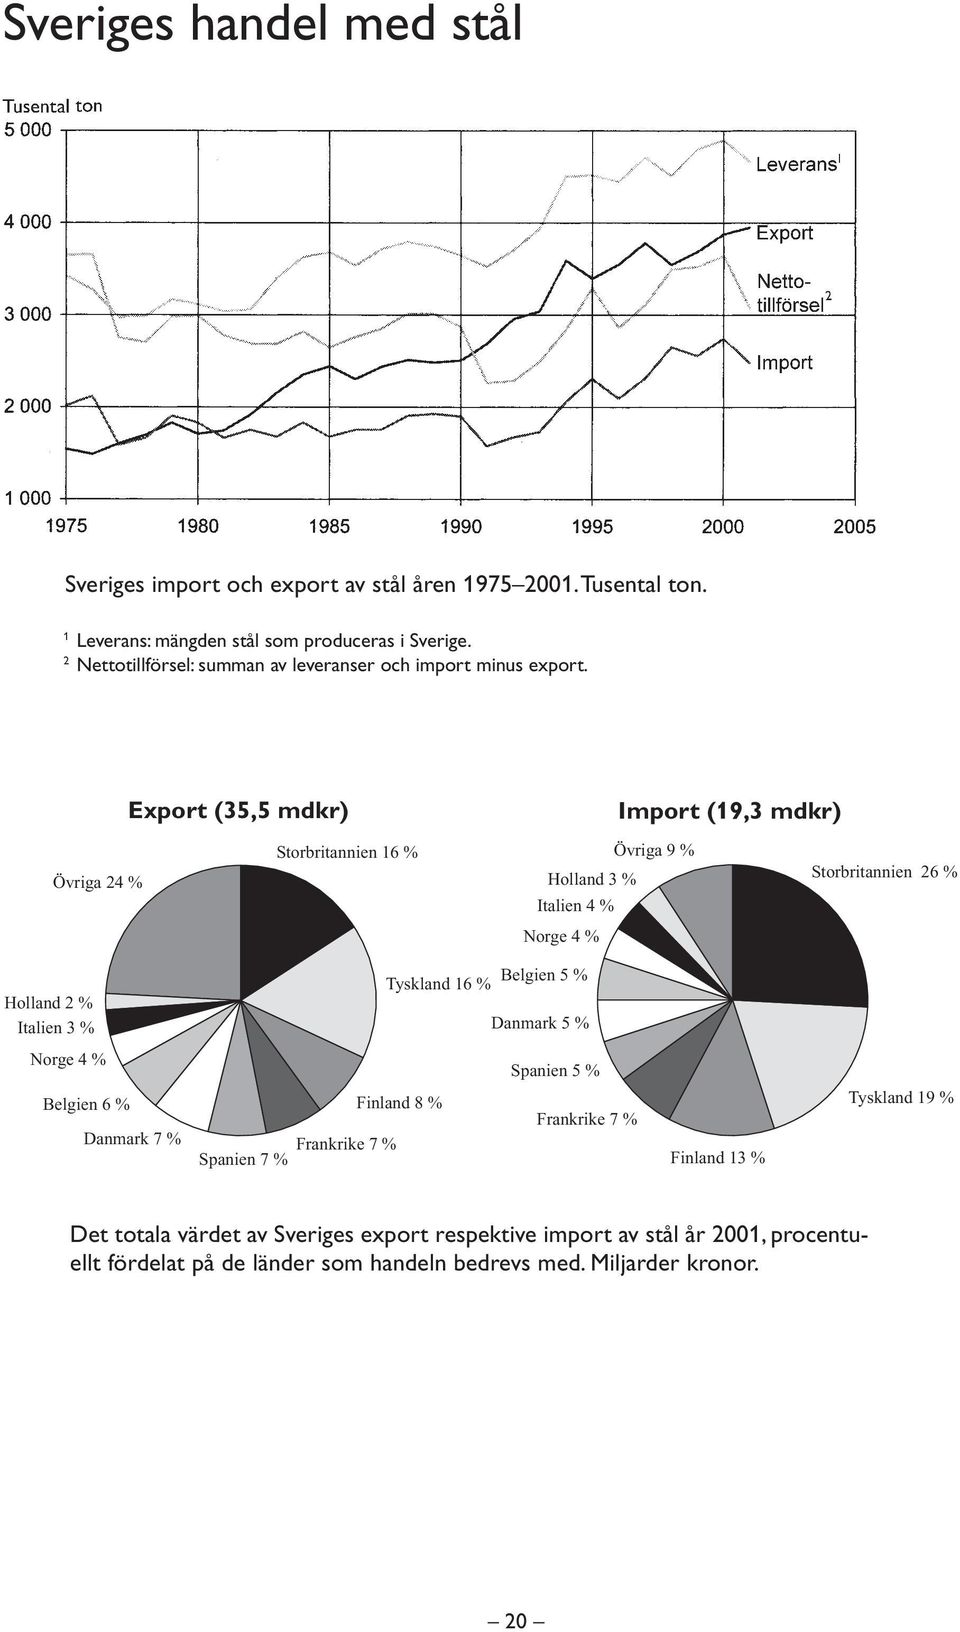 xport (35,5 mdkr) Import (19,3 mdkr) Övriga 24 % torbritannien 16 % Övriga 9 % olland 3 % Italien 4 % torbritannien 26 % Norge 4 % olland 2 % Italien 3 % yskland